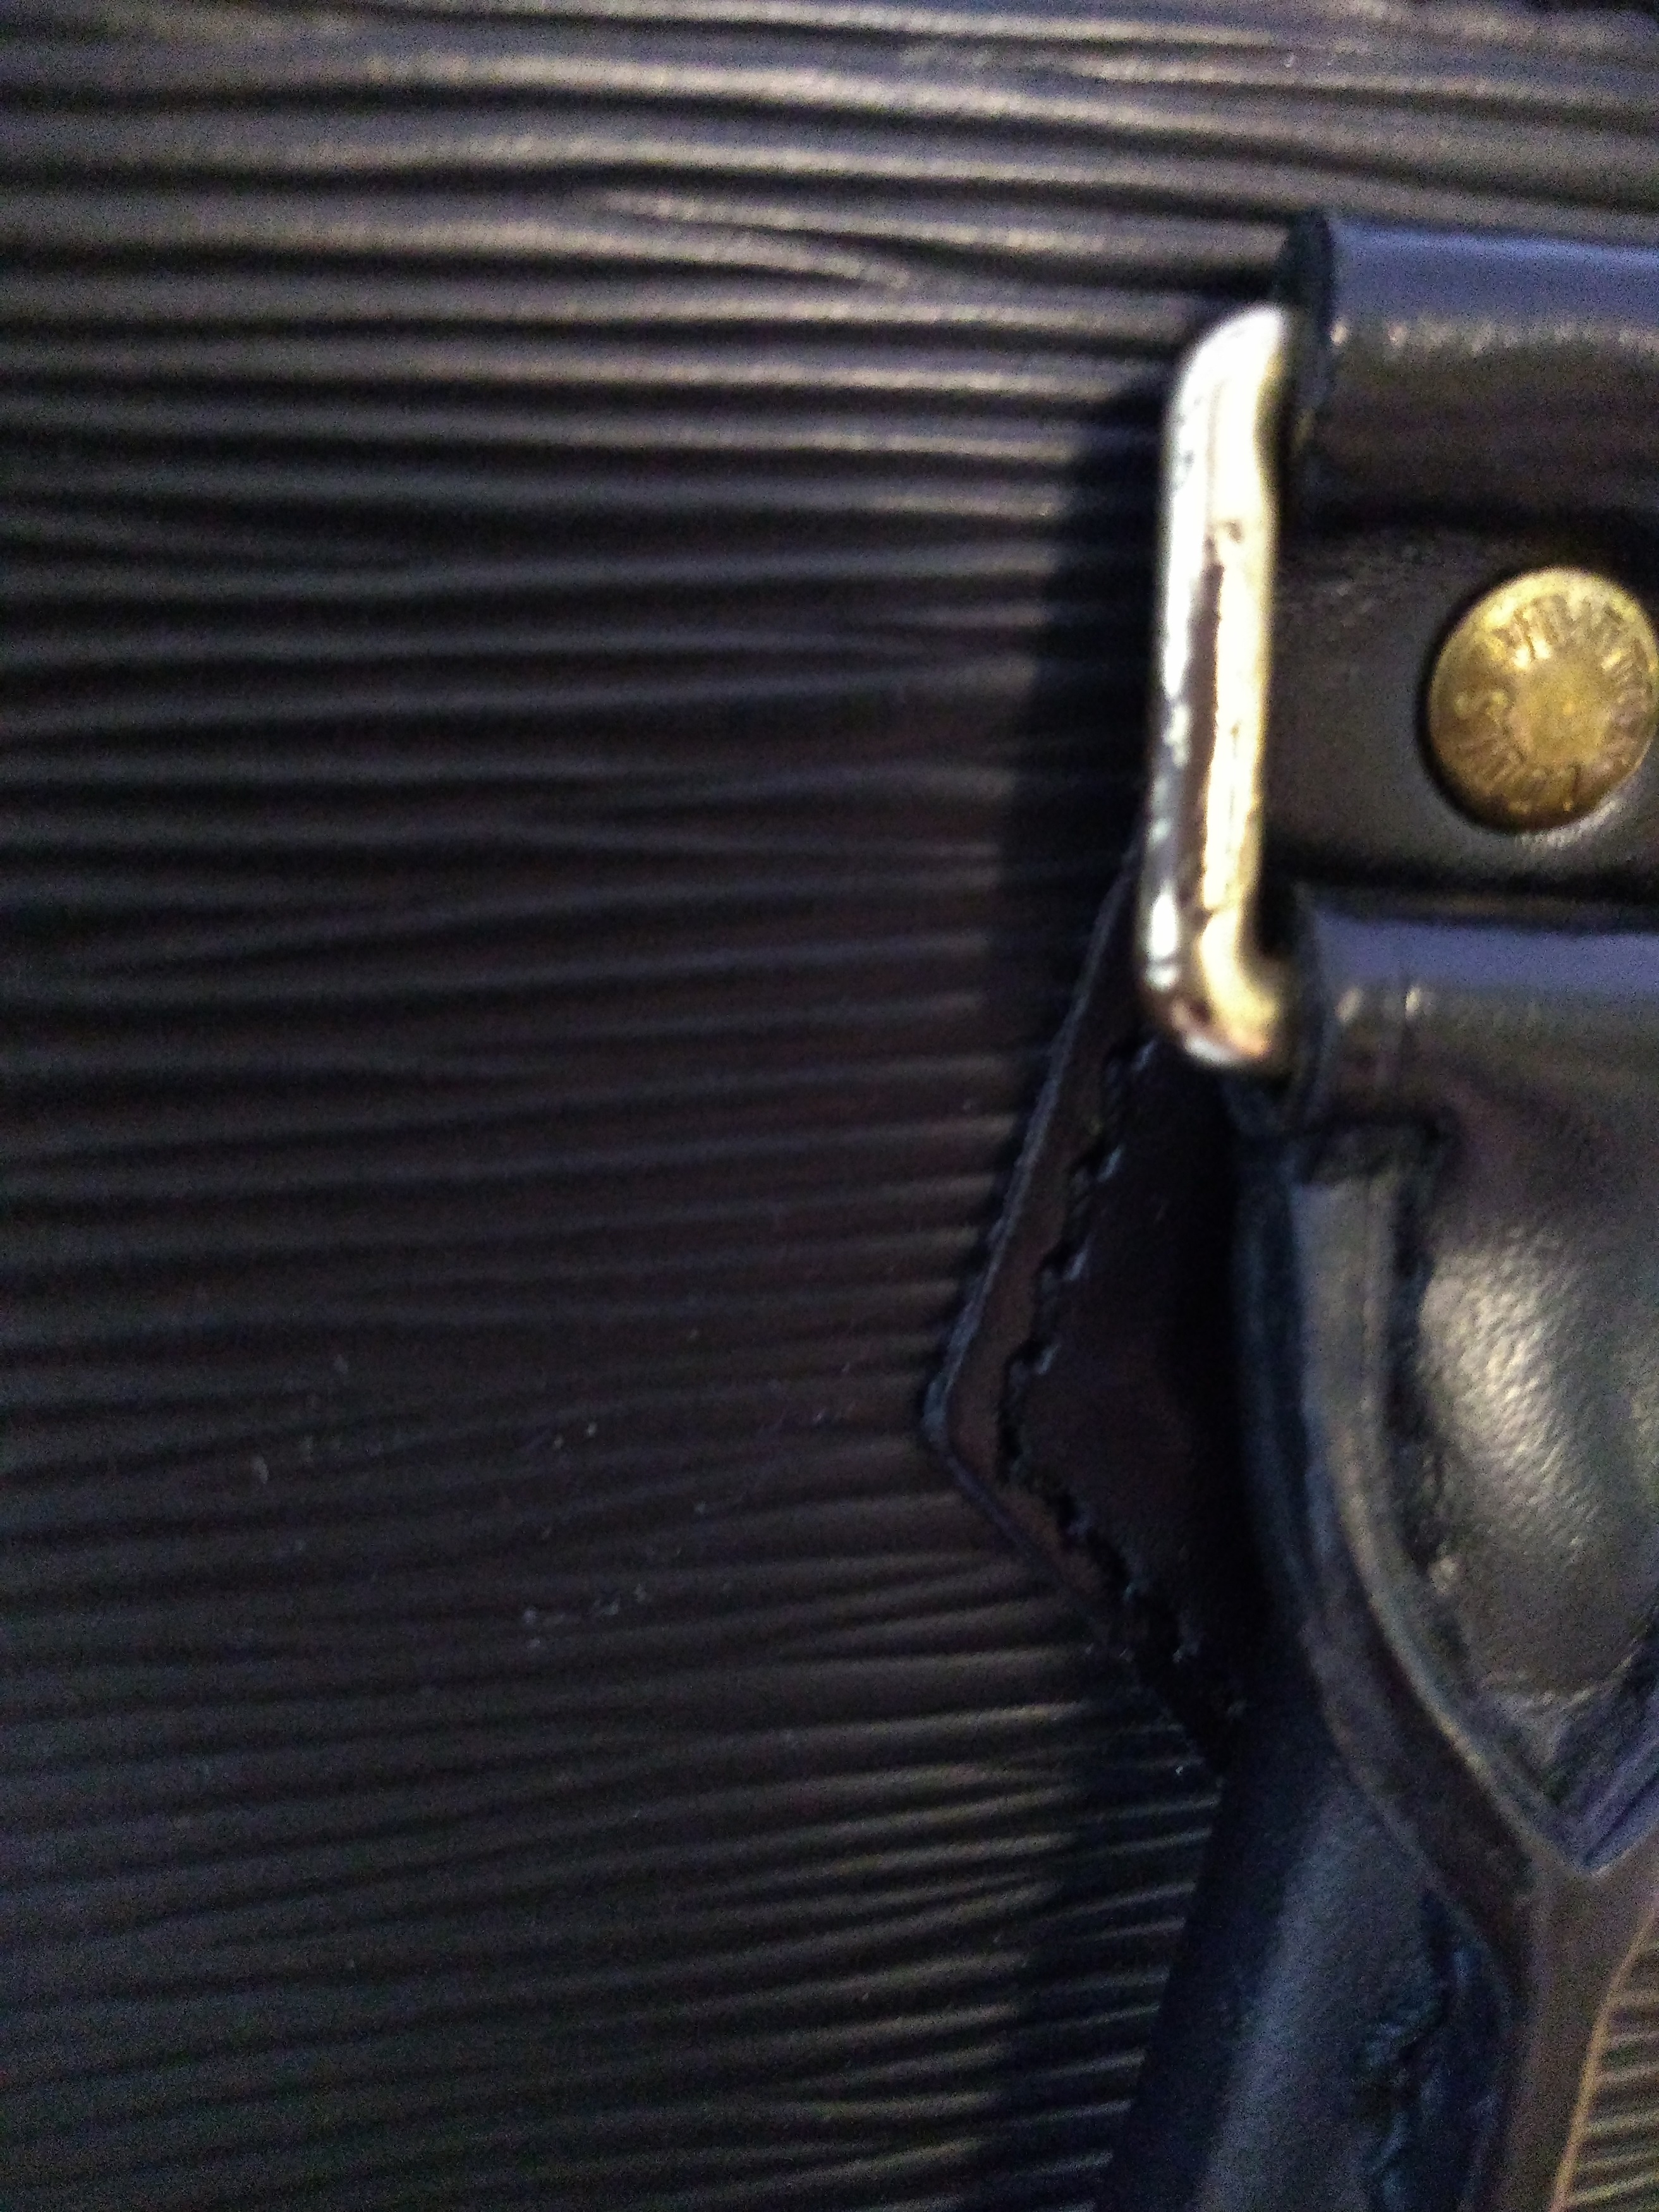 At Auction: Louis Vuitton, Louis Vuitton Kleber Handbag Epi Leather MM Black